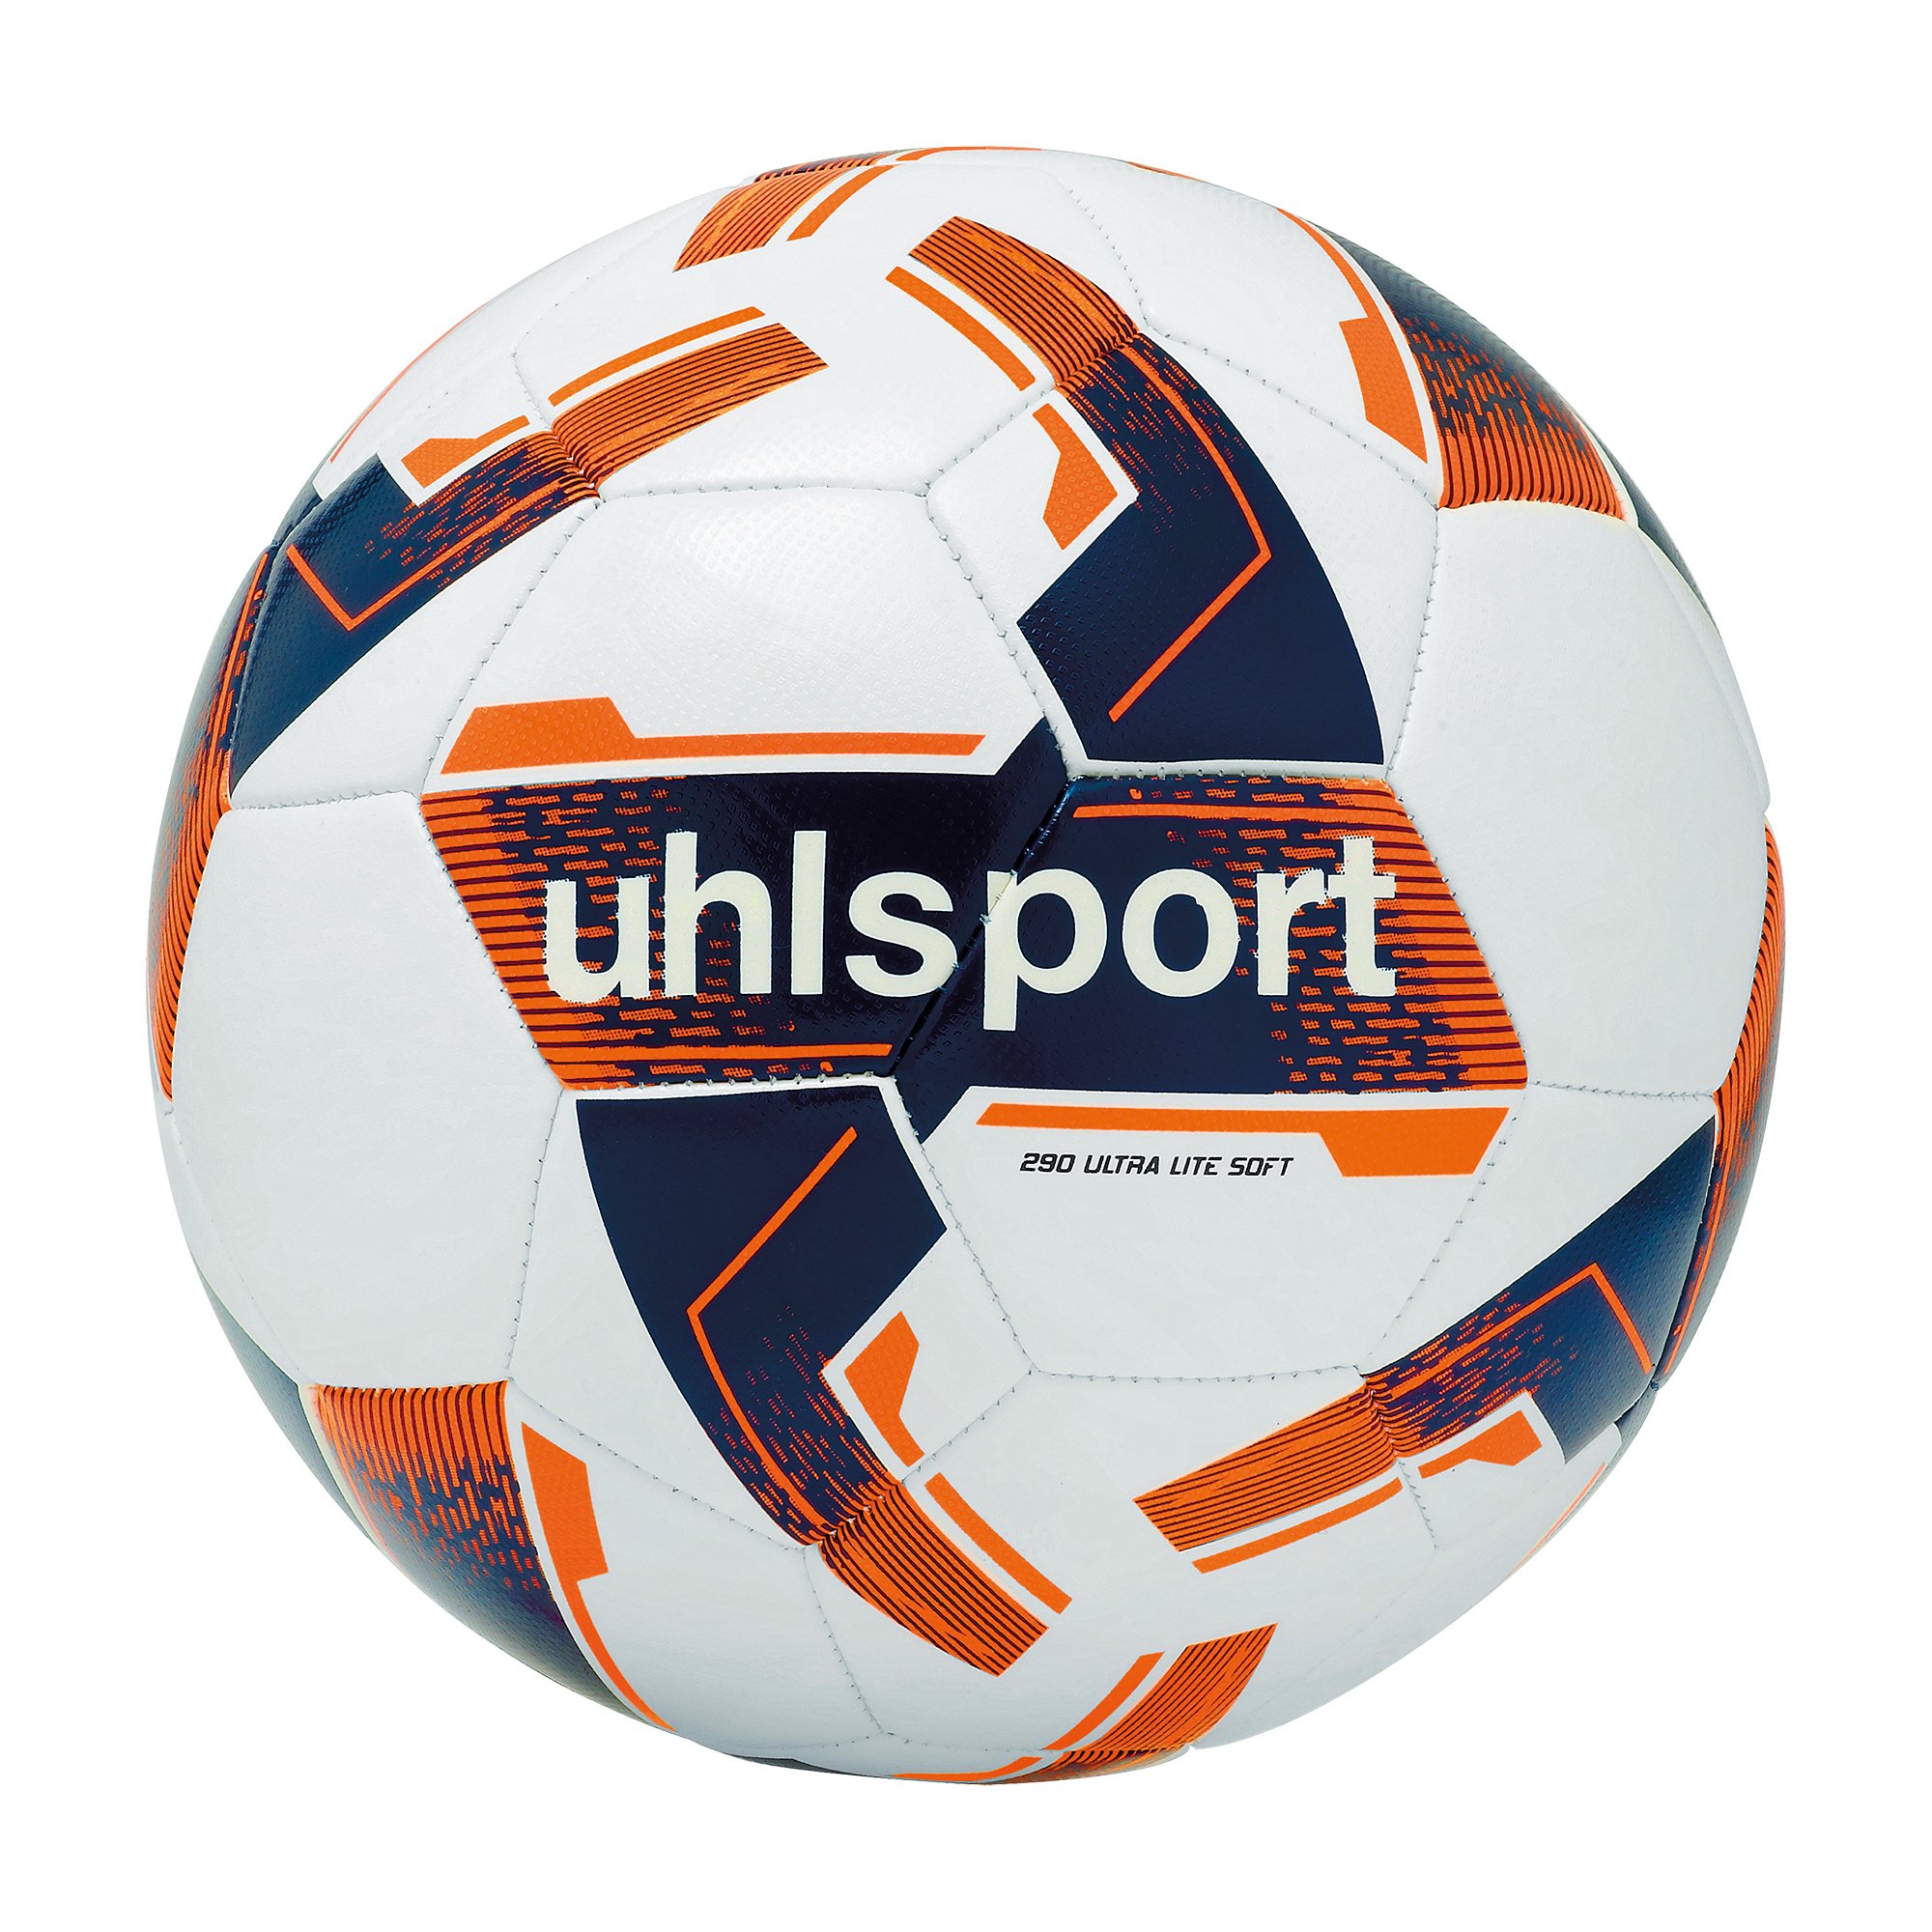 Uhlsport Ultra Lite Soft 290